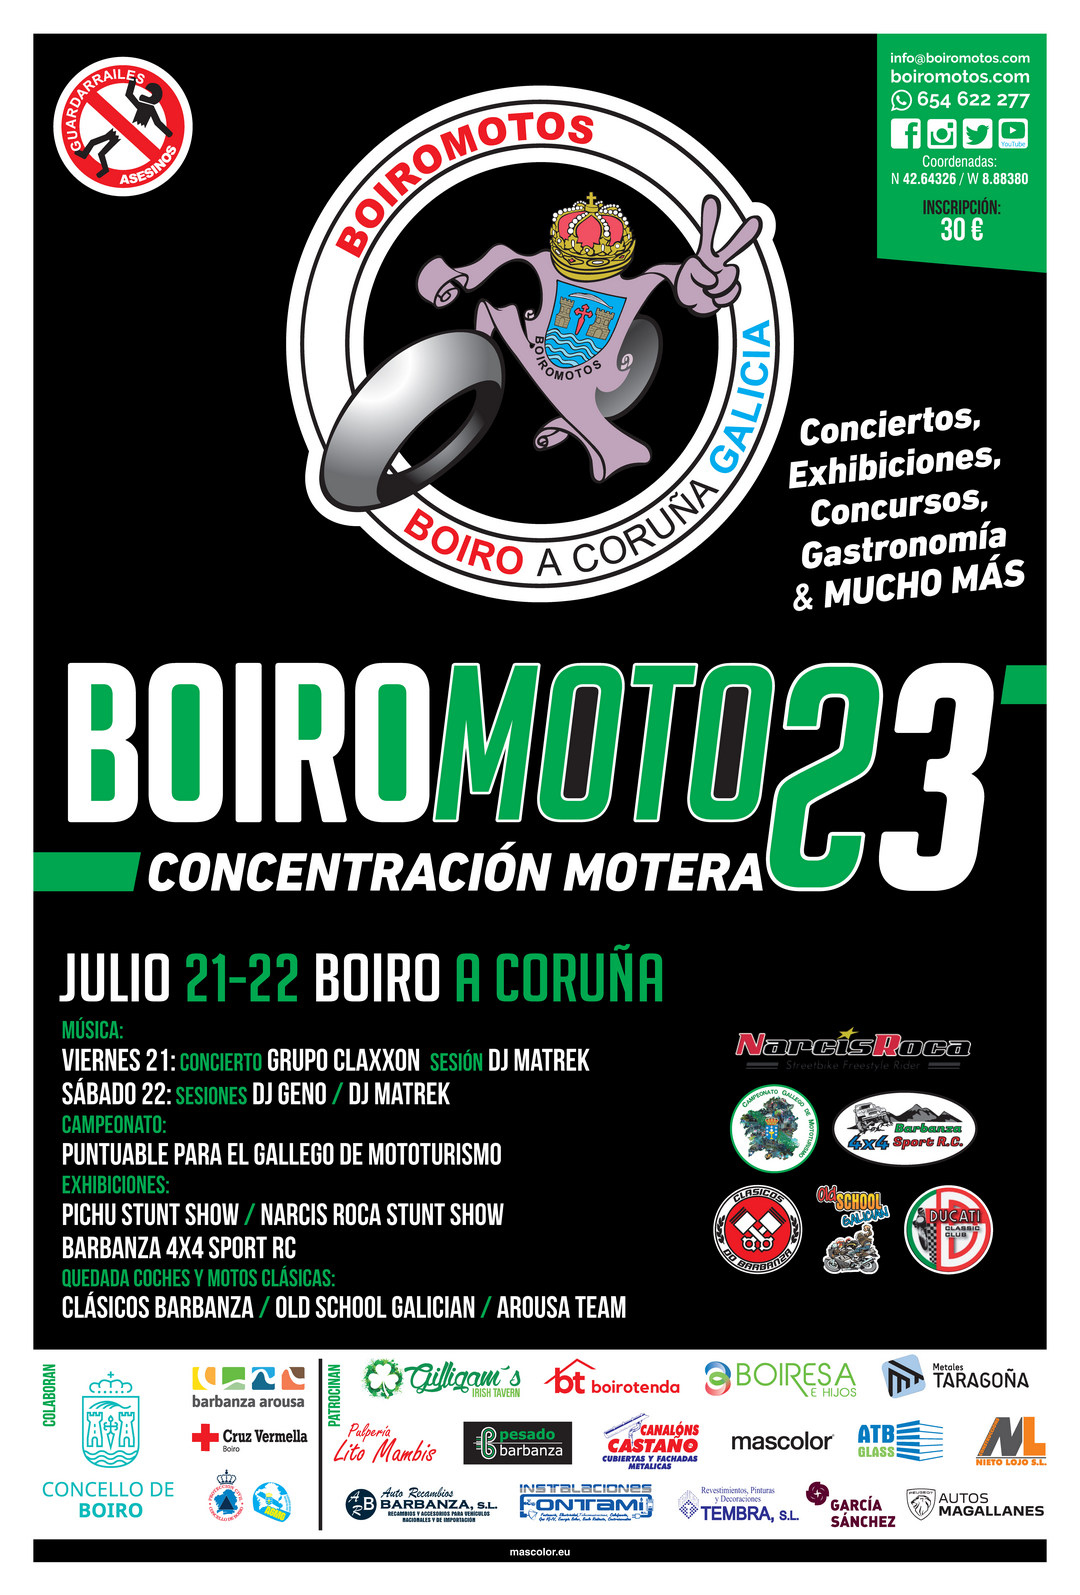 Concentración motera Boiro, A Coruña. Organiza Motoclub BOIROMOTOS